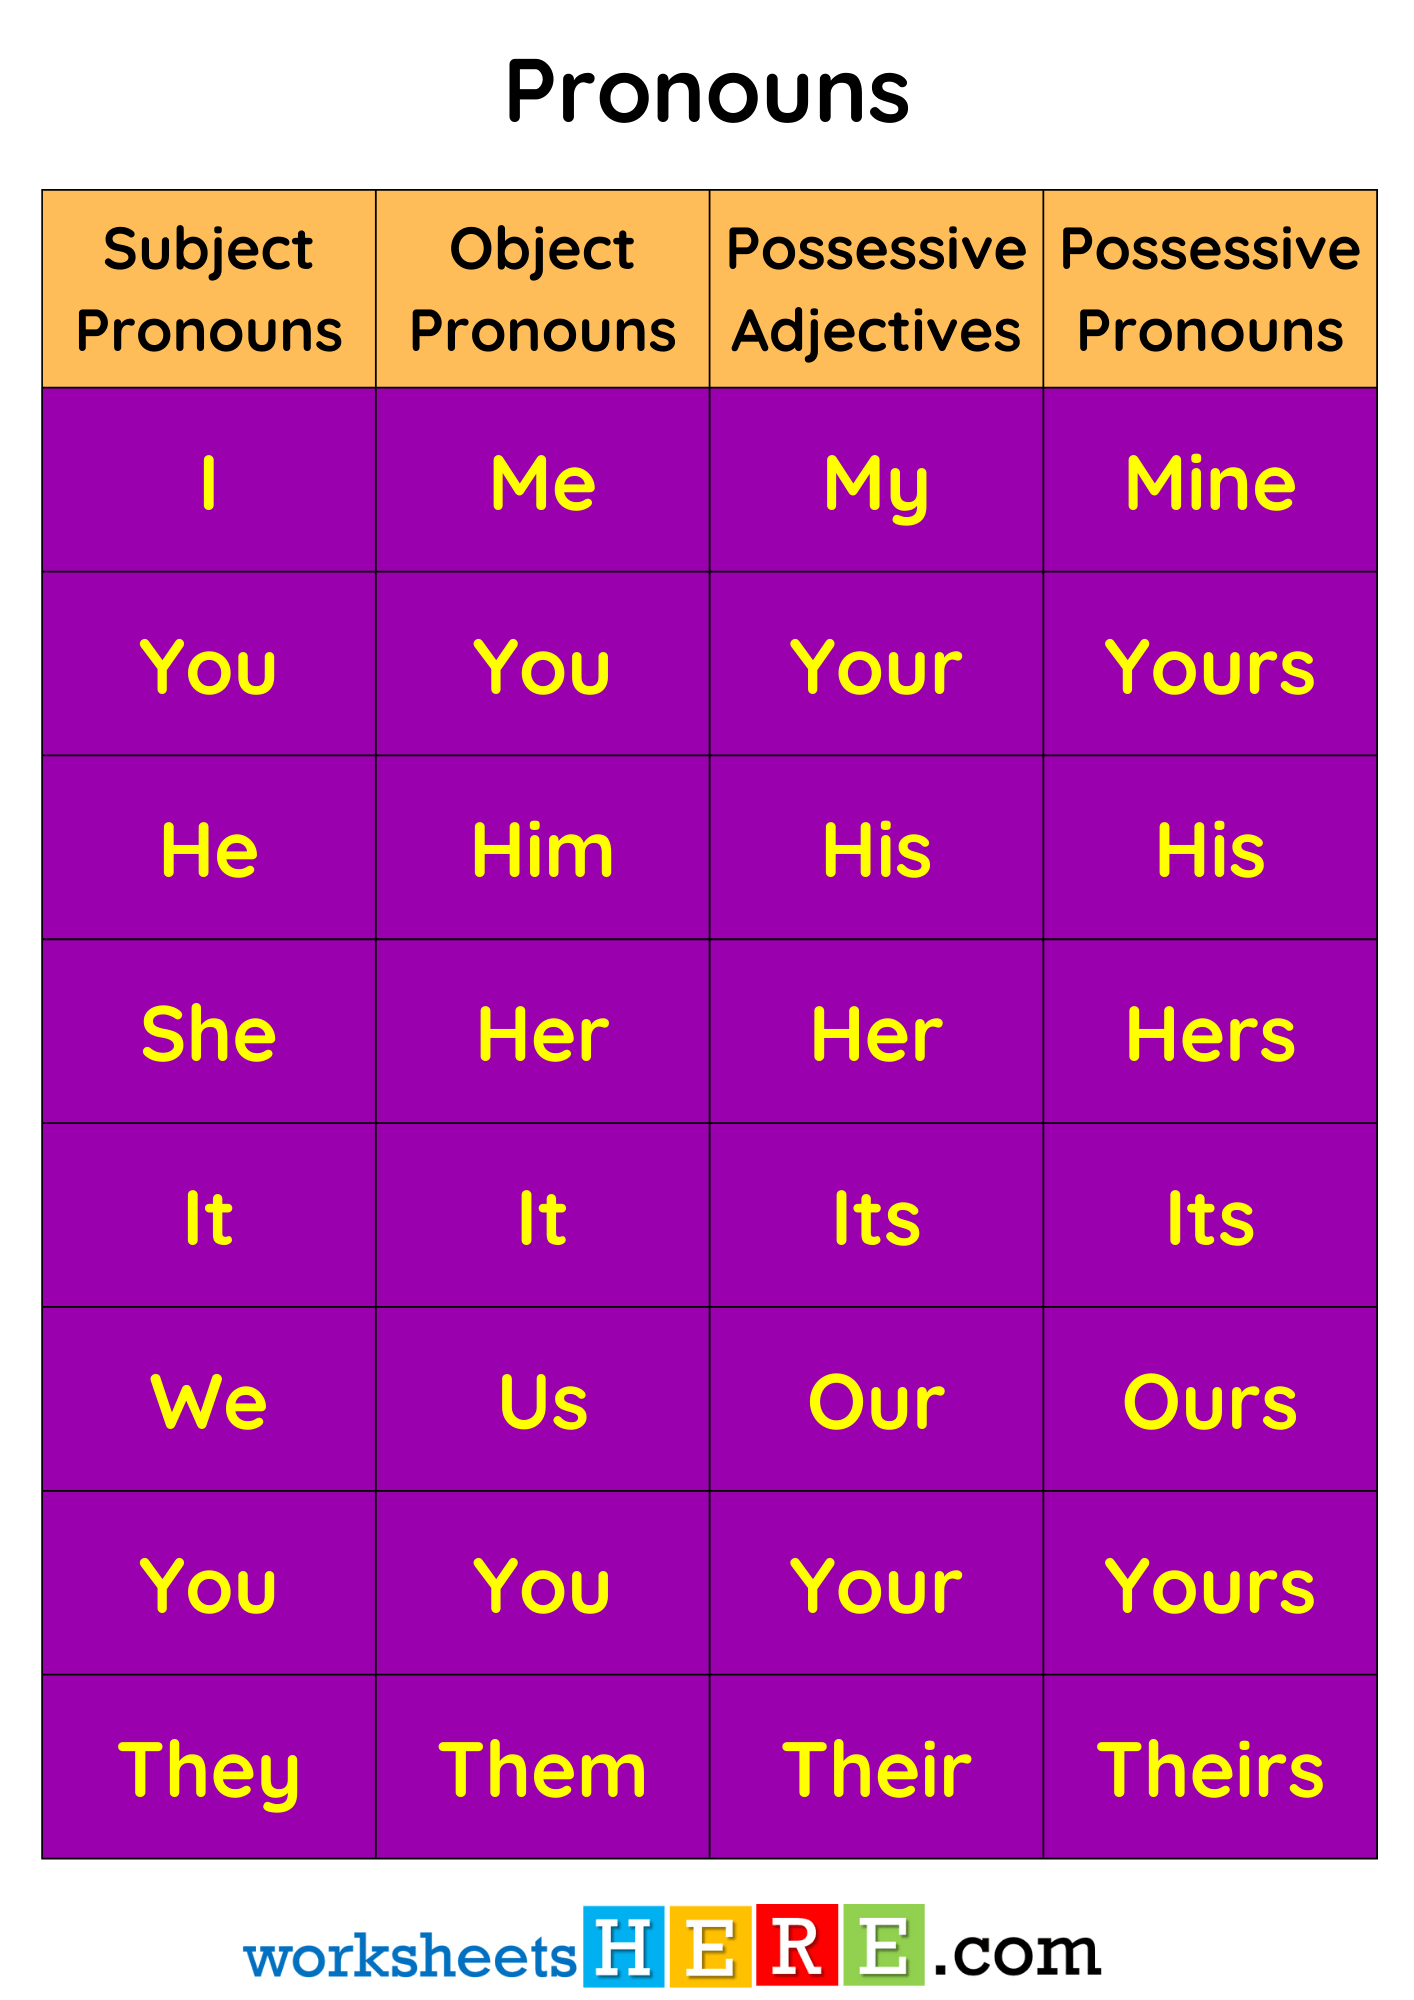 Subject Pronouns, Object Pronouns, Possessive Adjectives and Possessive Pronouns PDF Worksheet